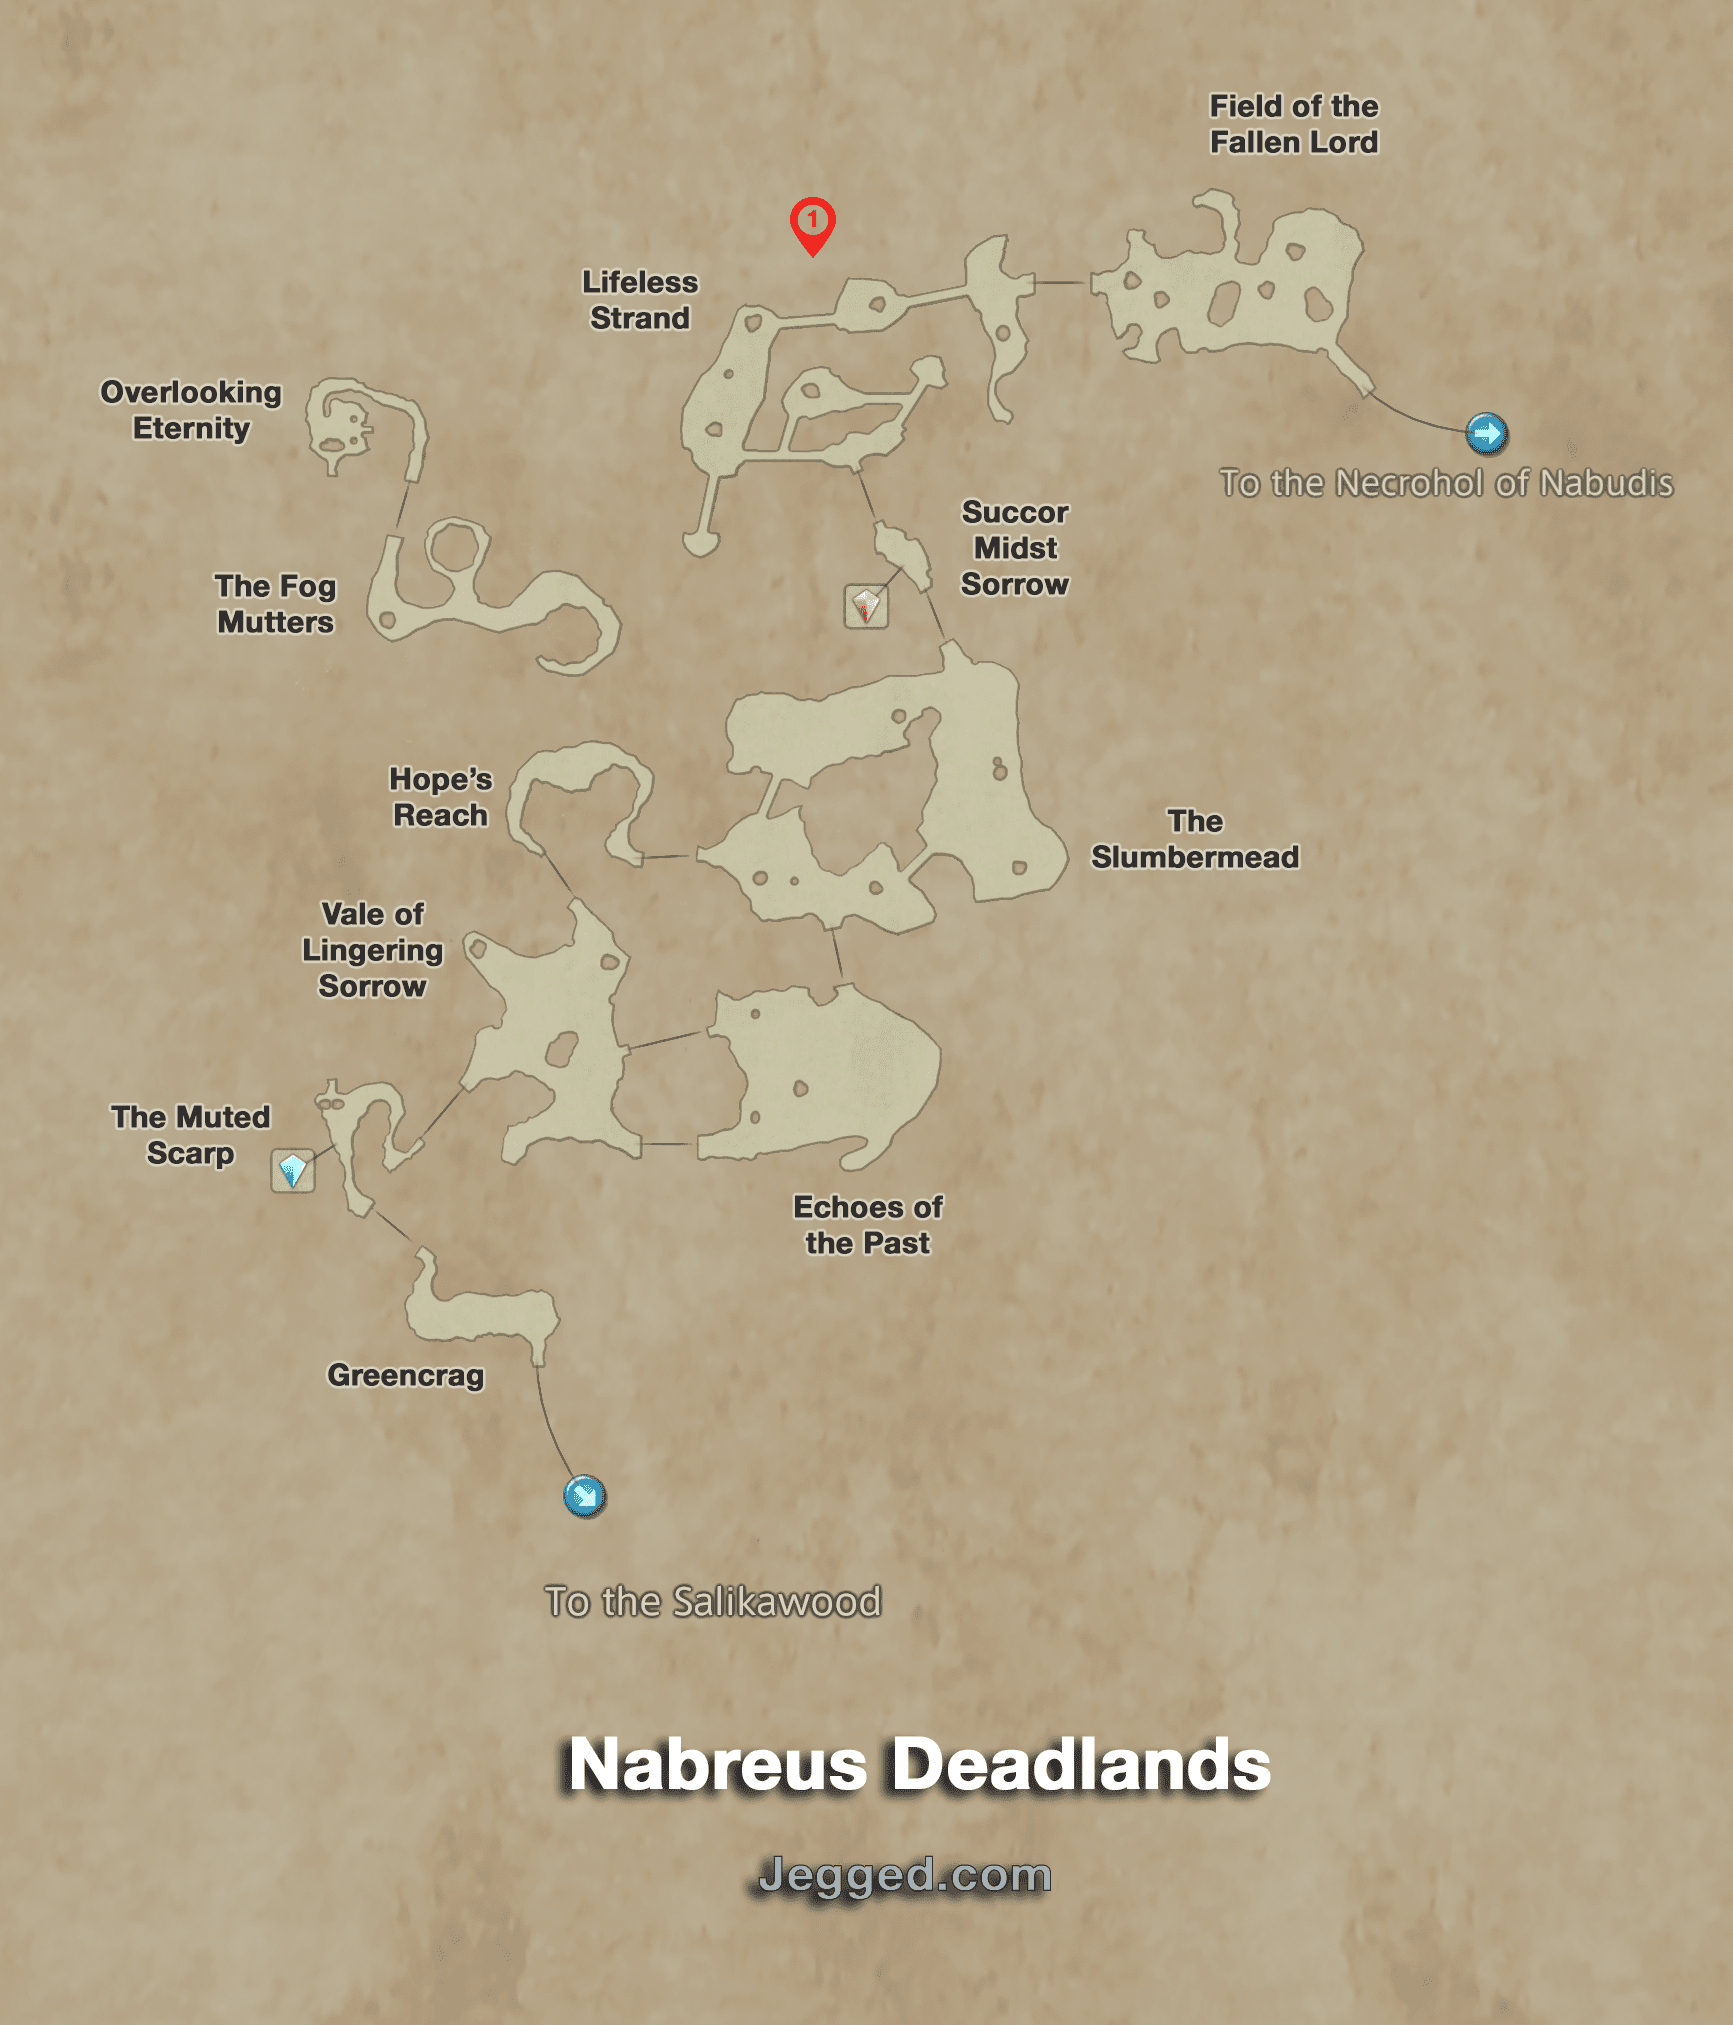 Final Fantasy XII Map of the Nabreus Deadlands - Jegged.com.